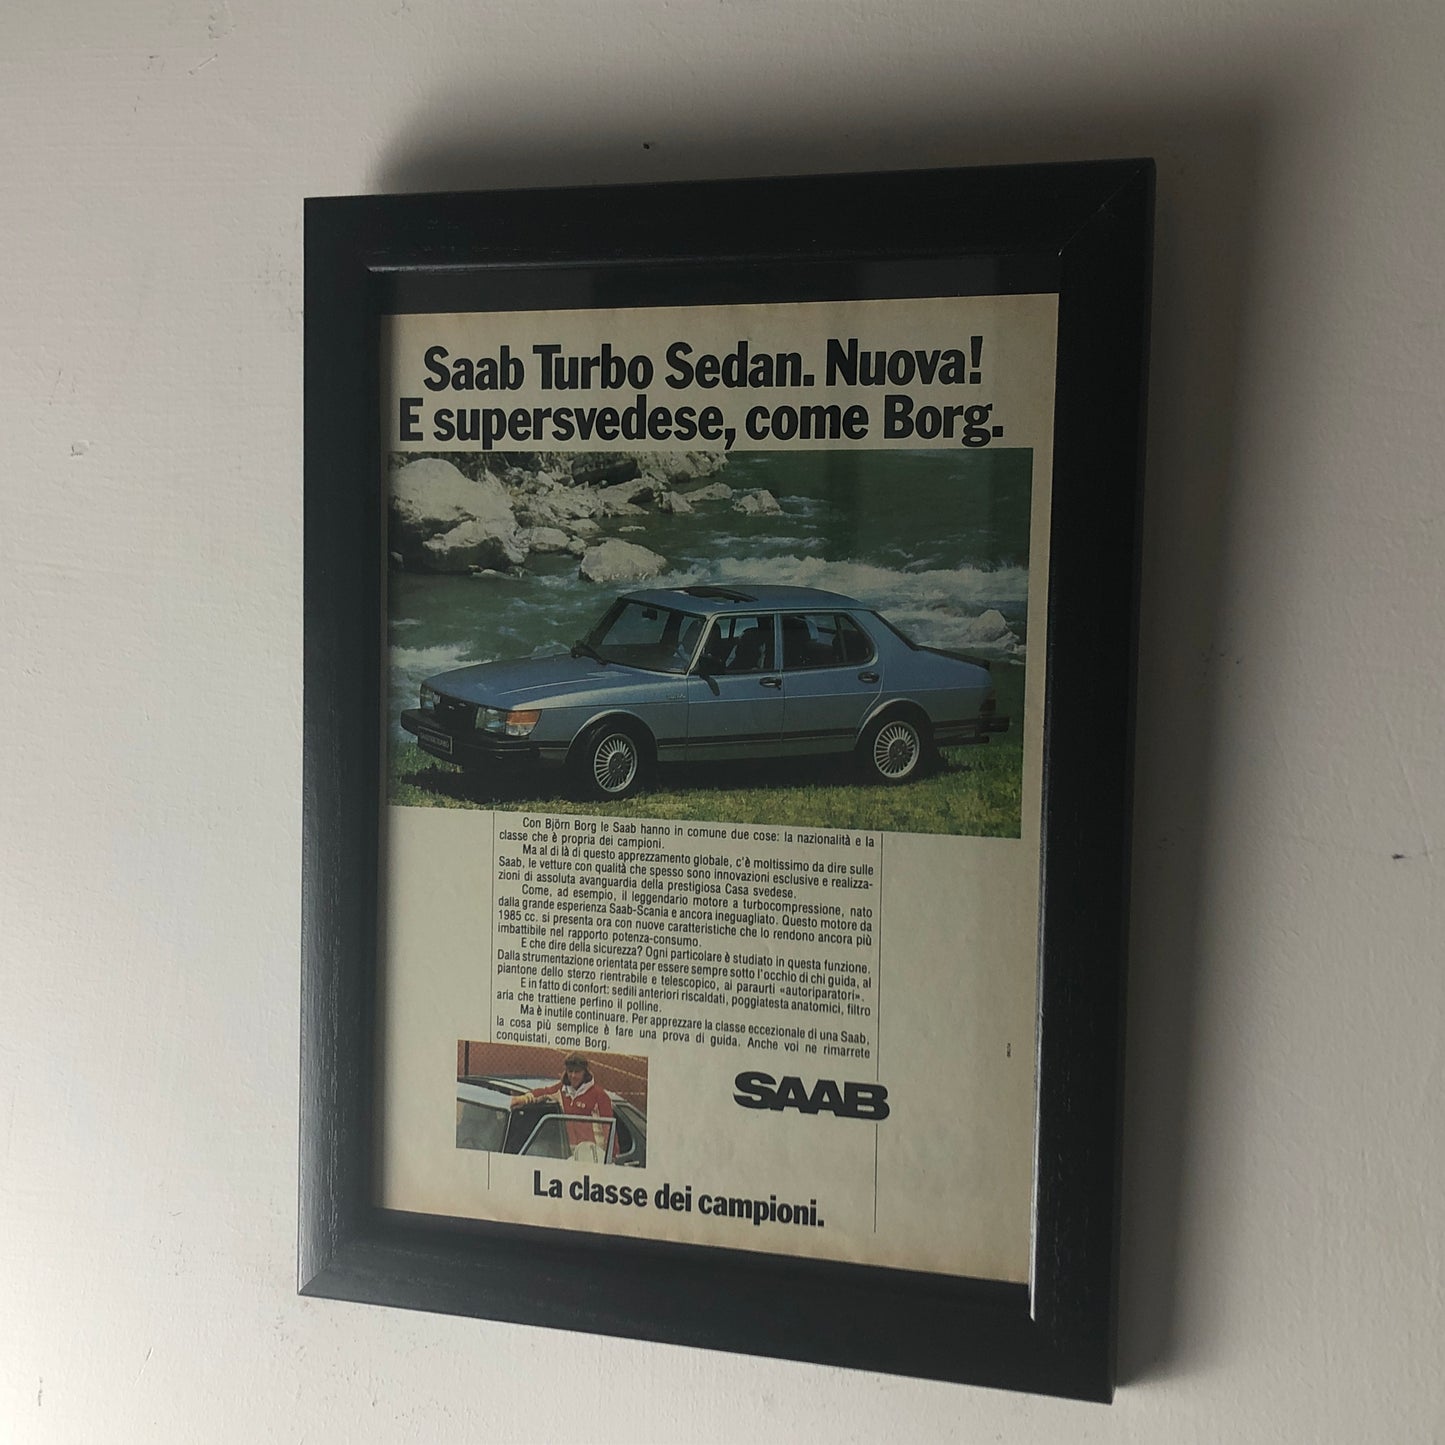 Saab, Pubblicità Anno 1981 Saab Turbo Sedan Nuova e Supersvedese Come Borg